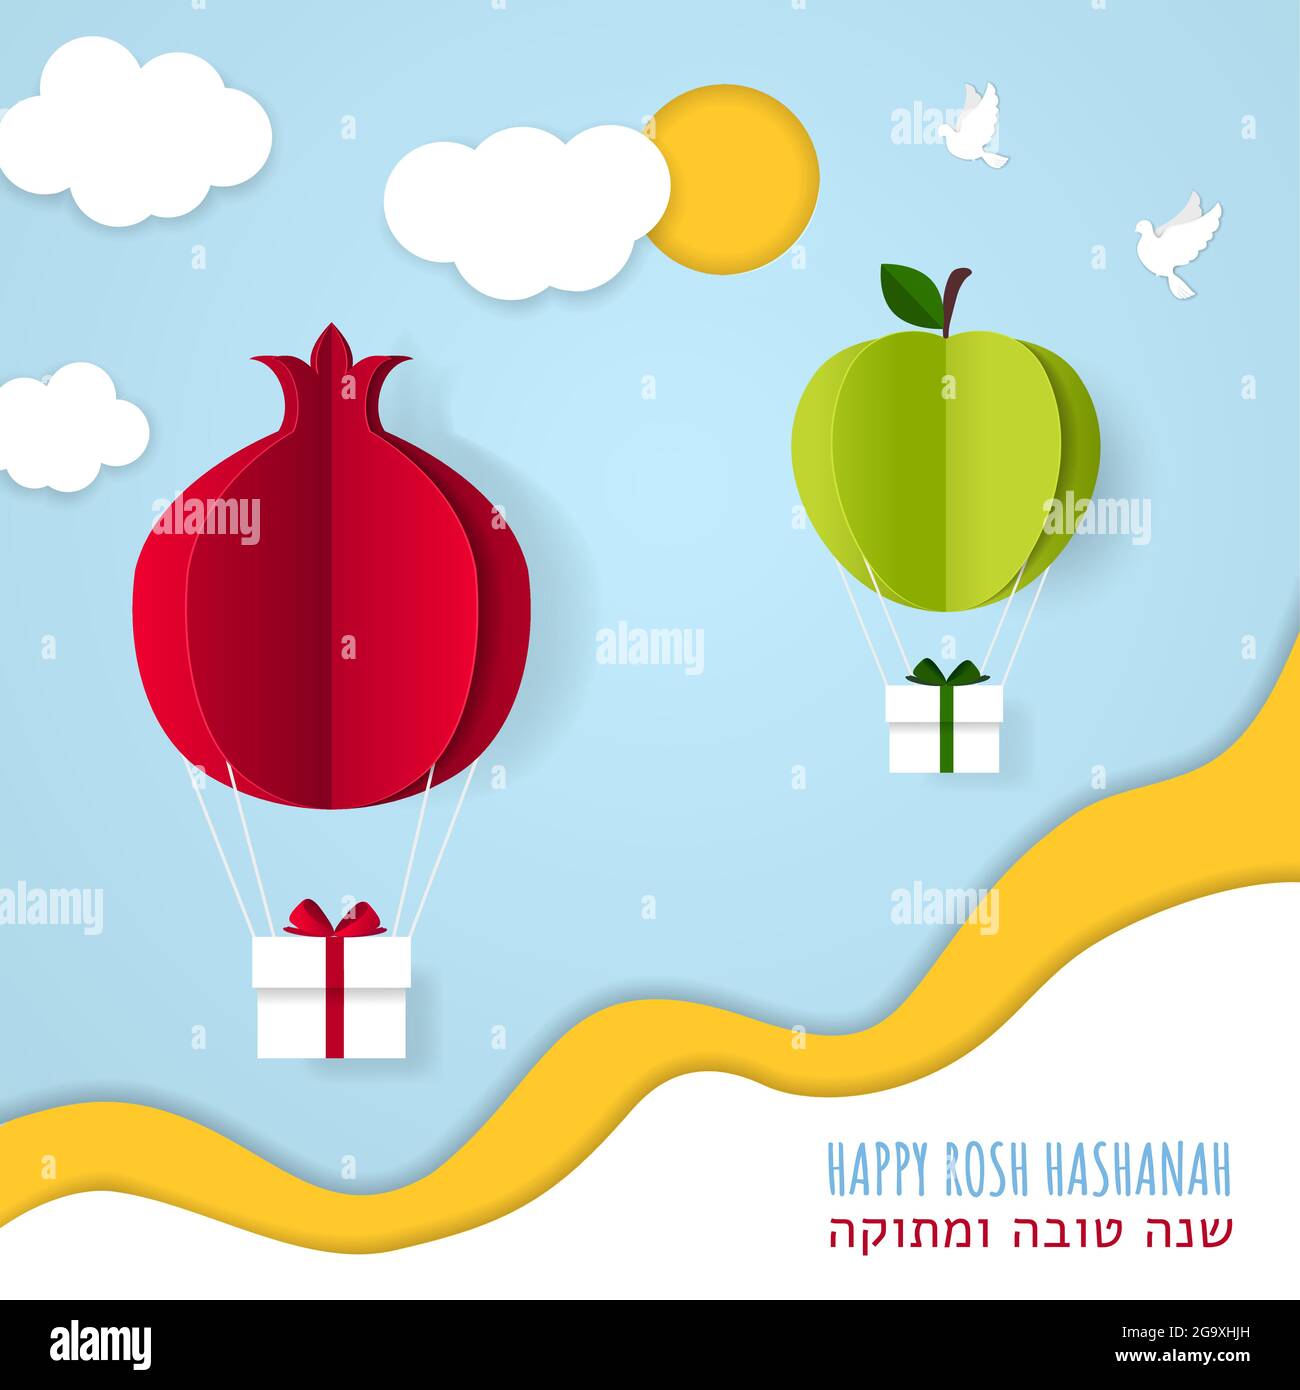 Traducción al hebreo fotografías e imágenes de alta resolución - Página 2 -  Alamy